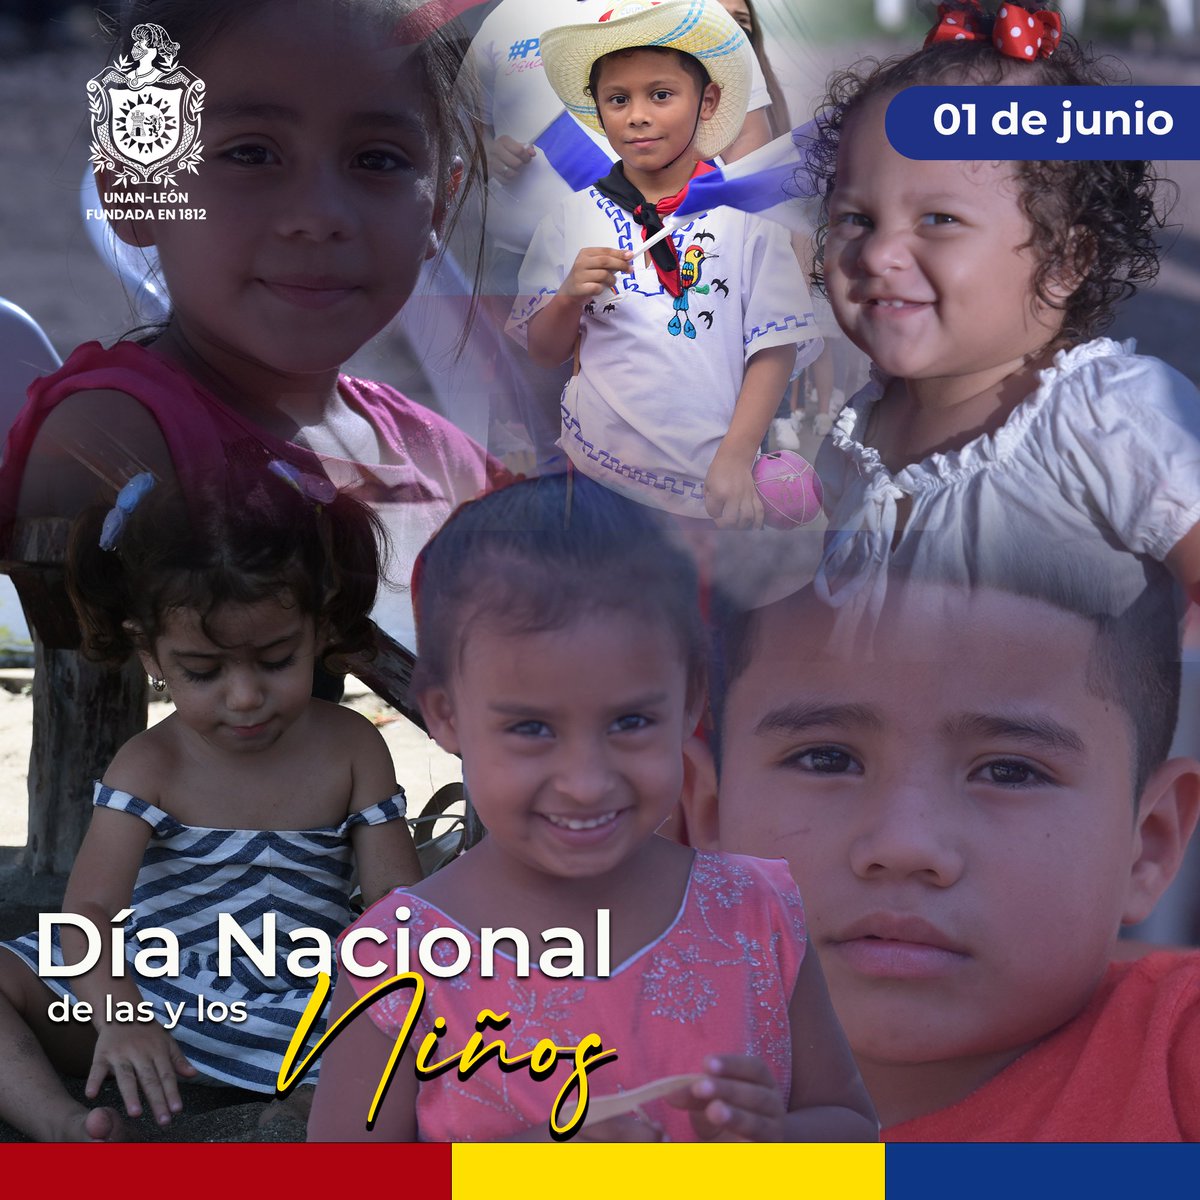 01 de junio | La Bicentenaria UNAN León, saluda el día del niño 👦 y la niña 👧 
#JunioEnVictorias  #BicentenariaUNANLeón